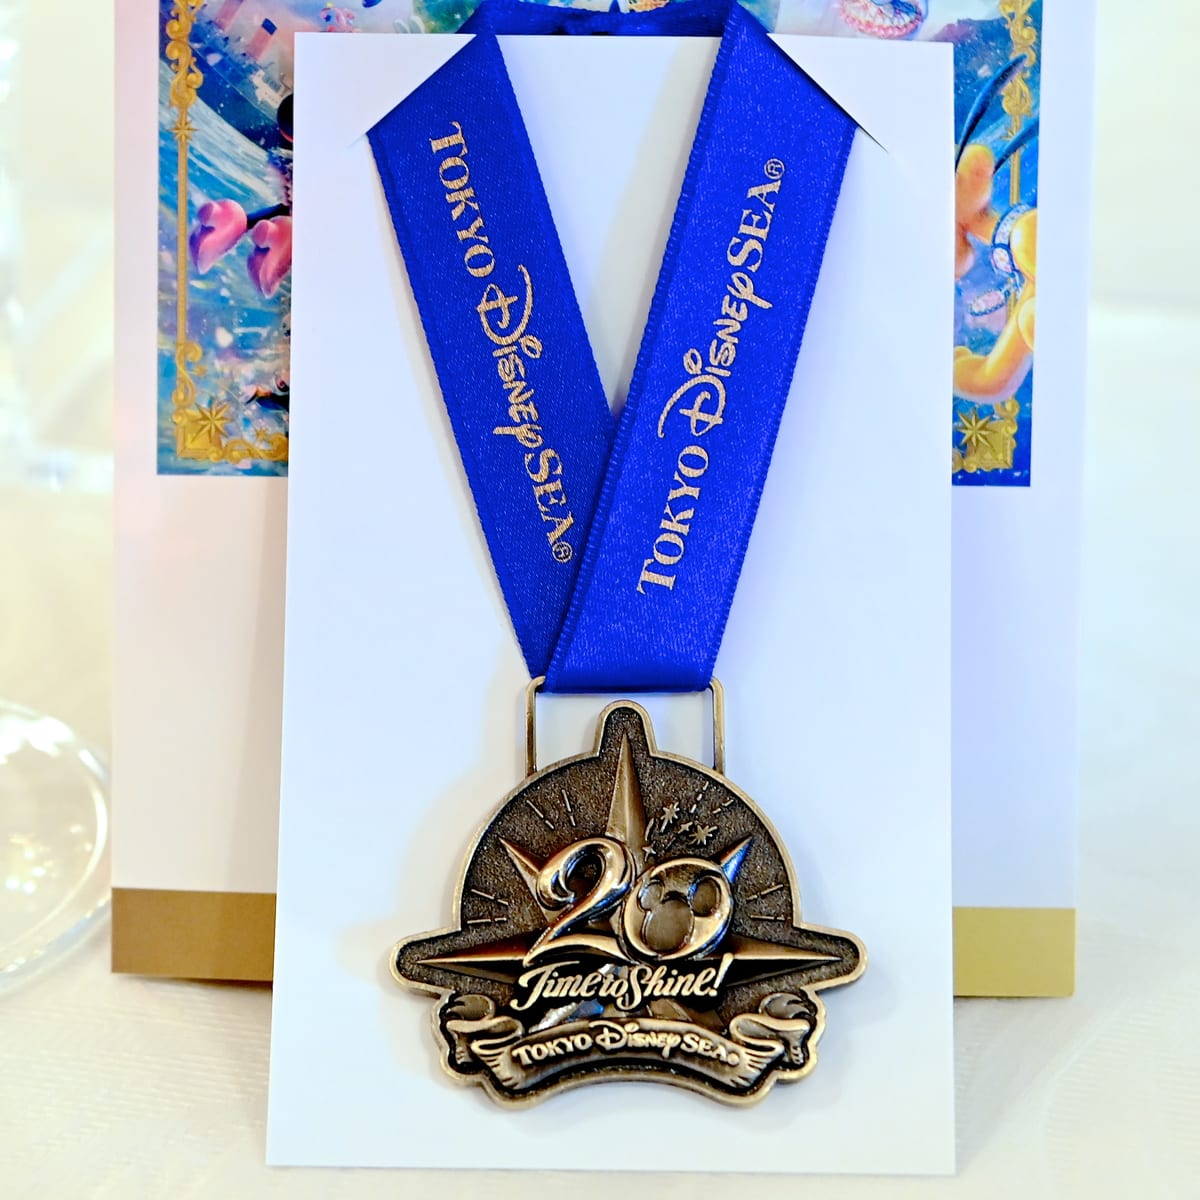 東京ディズニーシー周年記念スーベニアメダル ストラップ付き